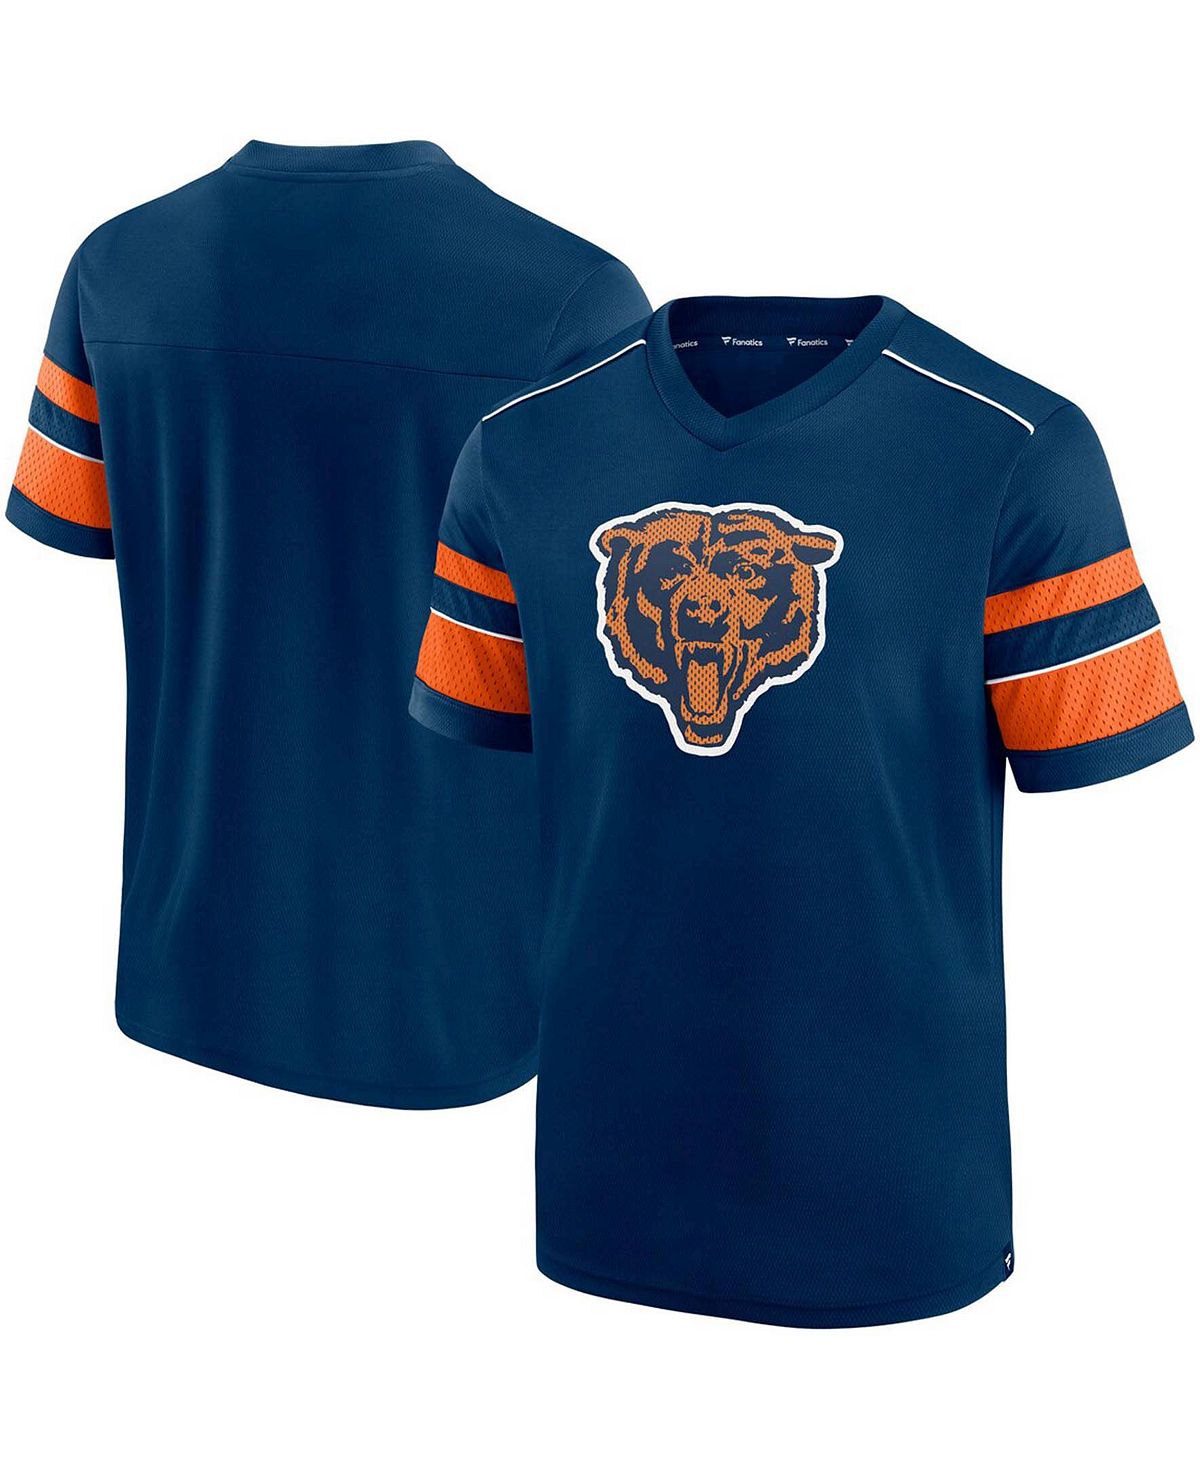 Мужская темно-синяя футболка с v-образным вырезом и принтом chicago bears throwback hashmark Fanatics, синий